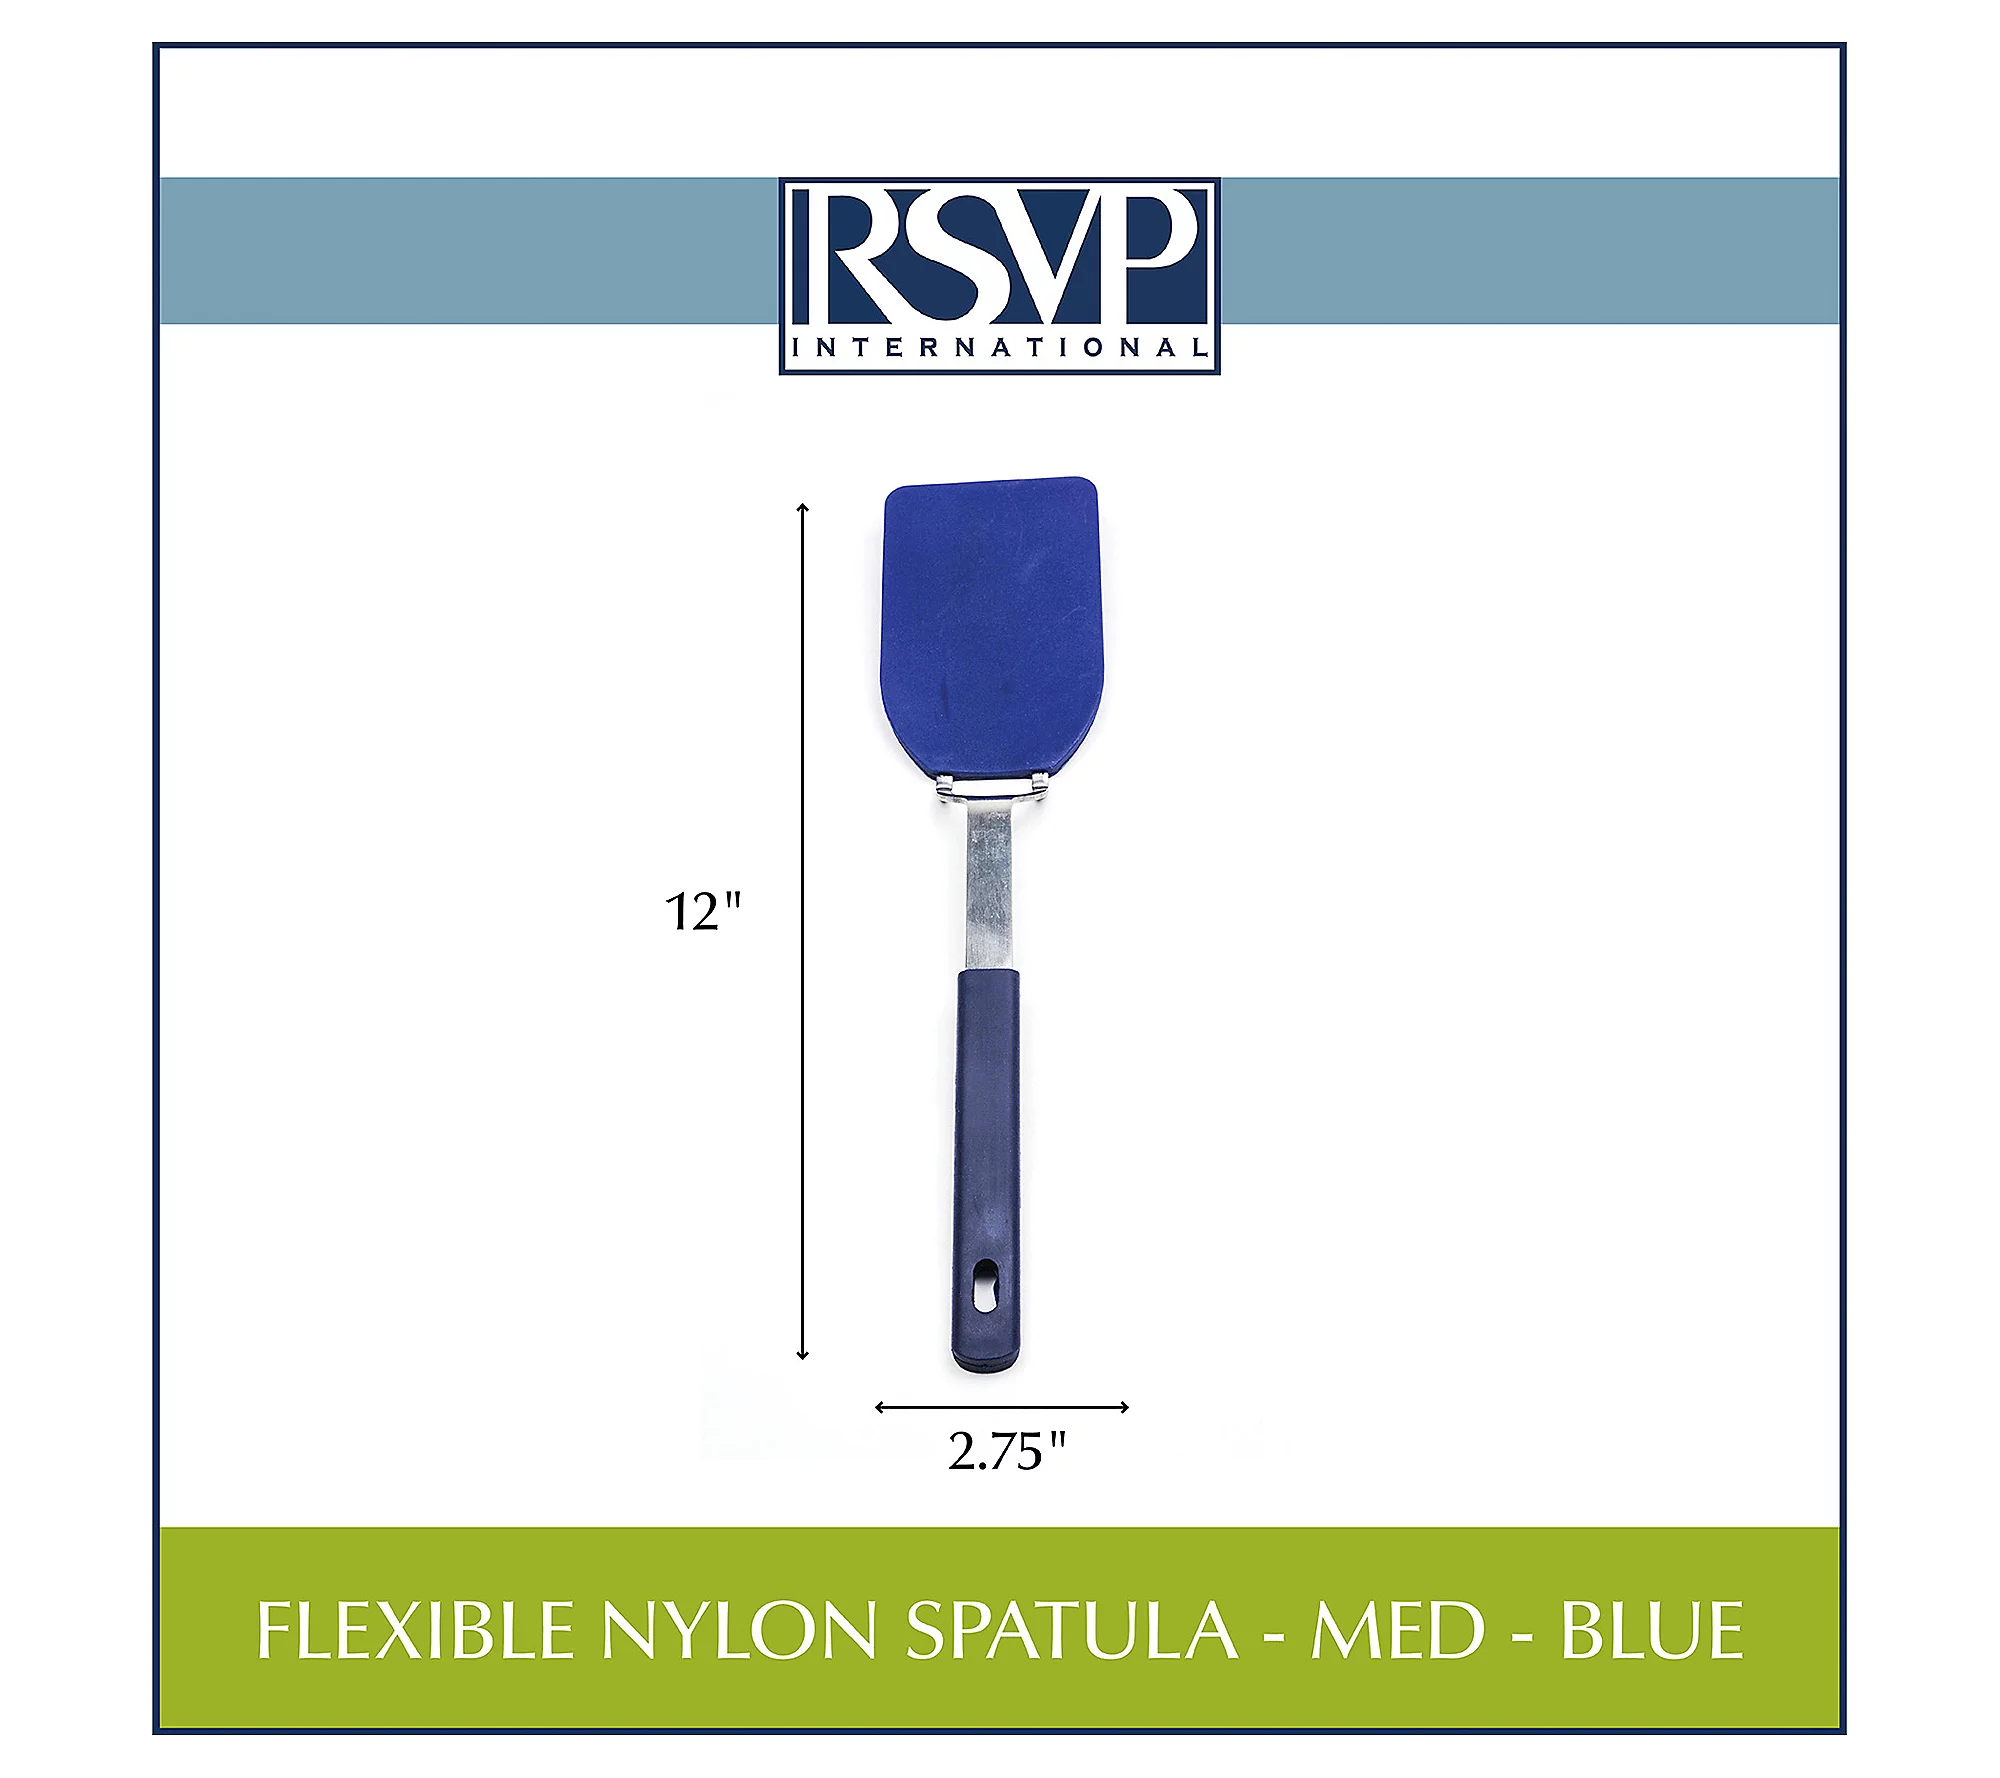 RSVP Flexible Nylon Spatula Medium